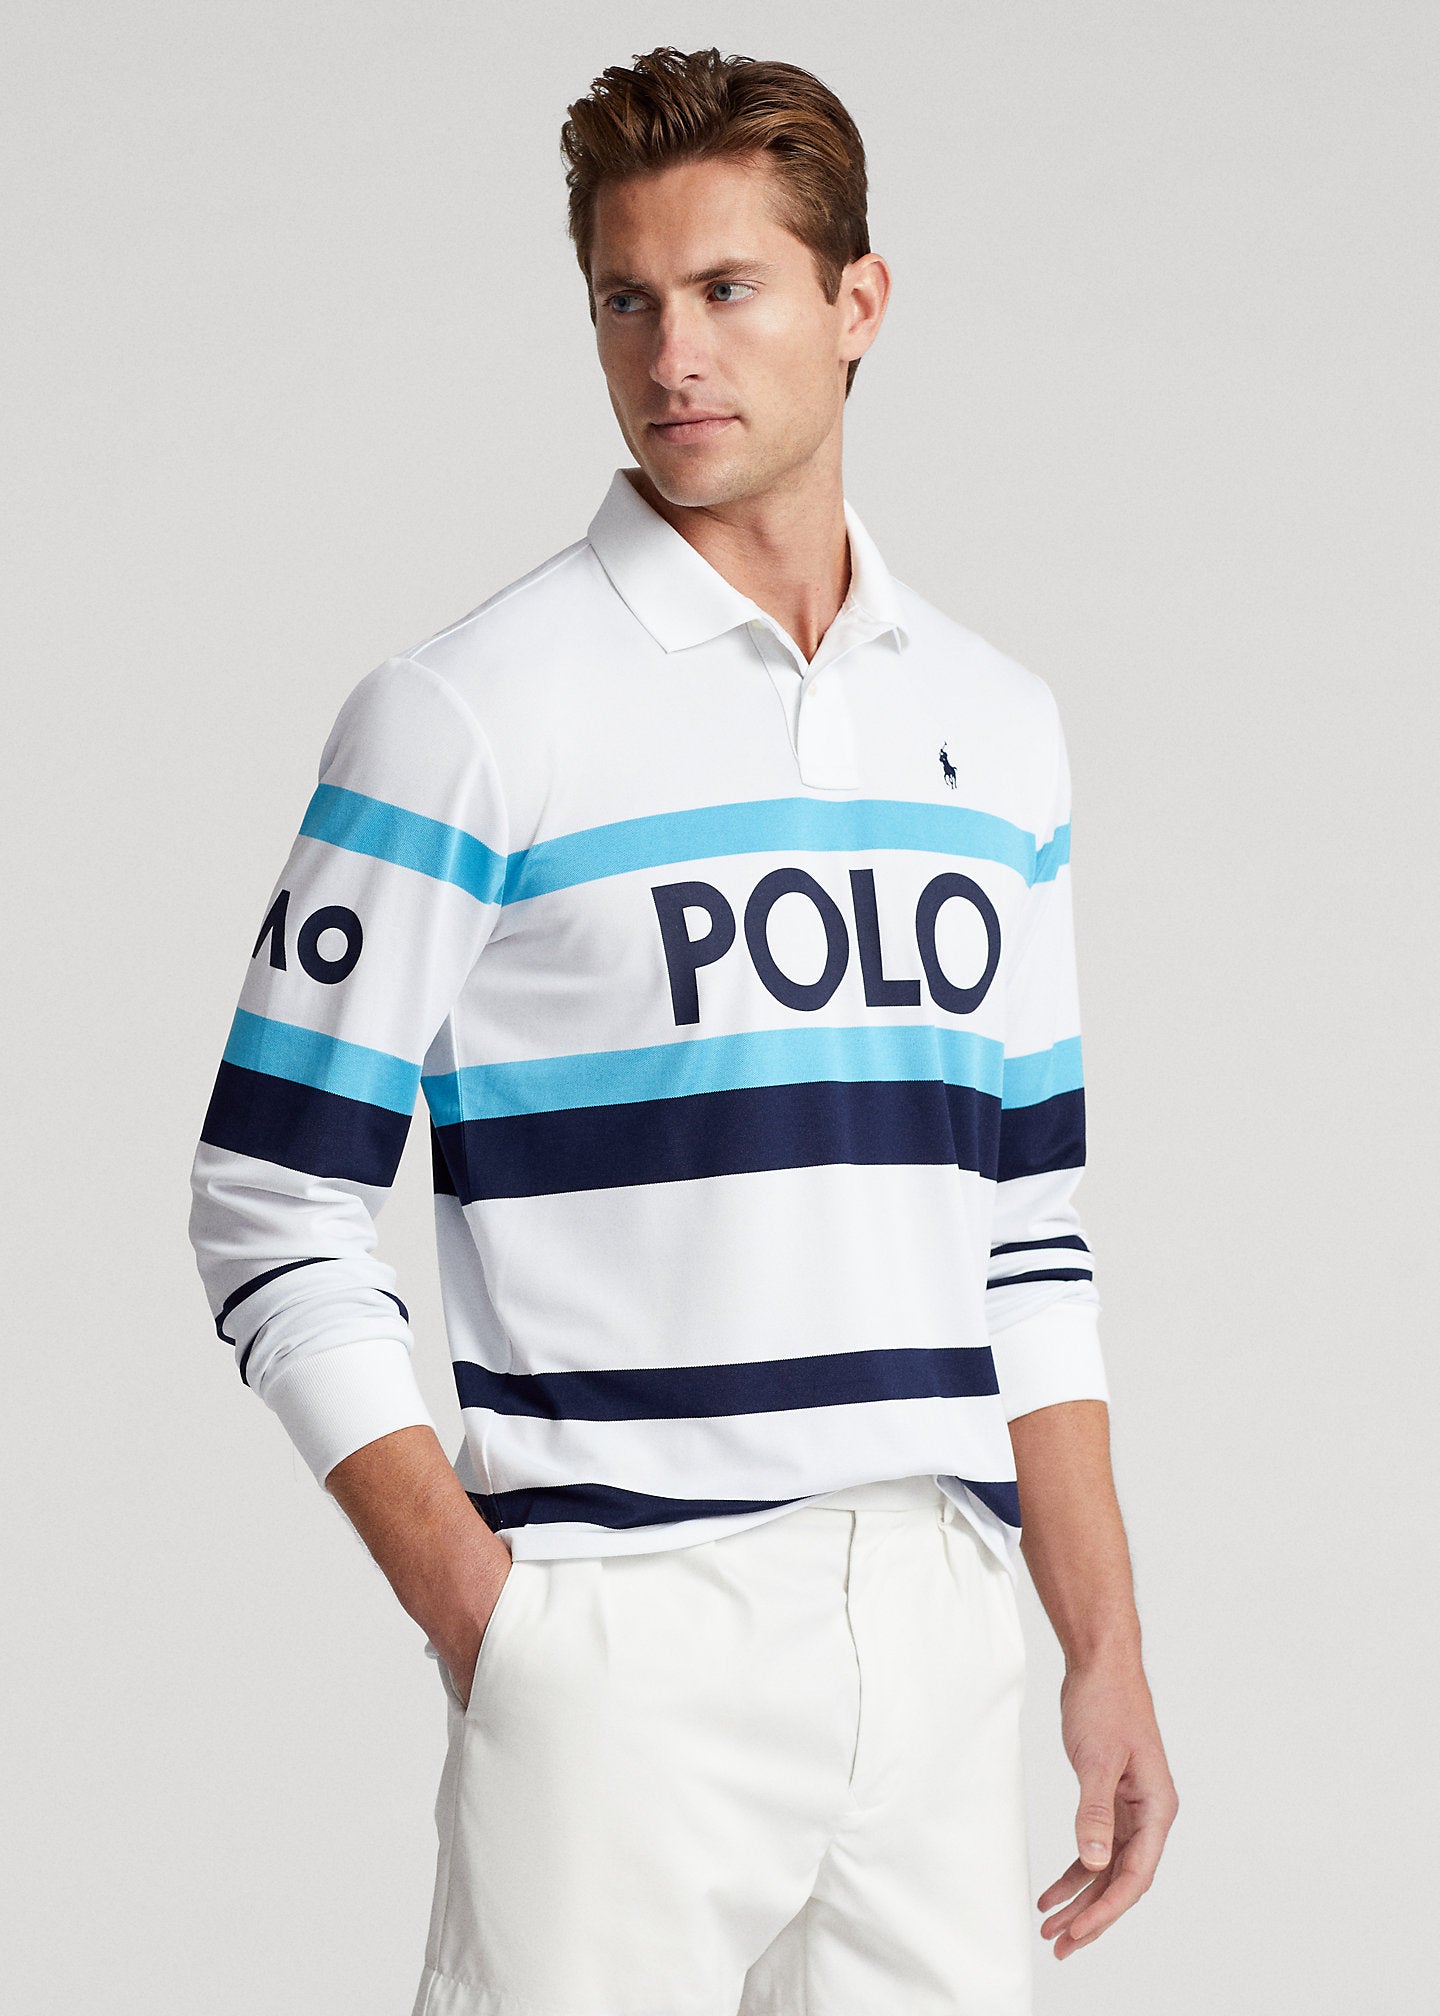 Men's Polo Jersey